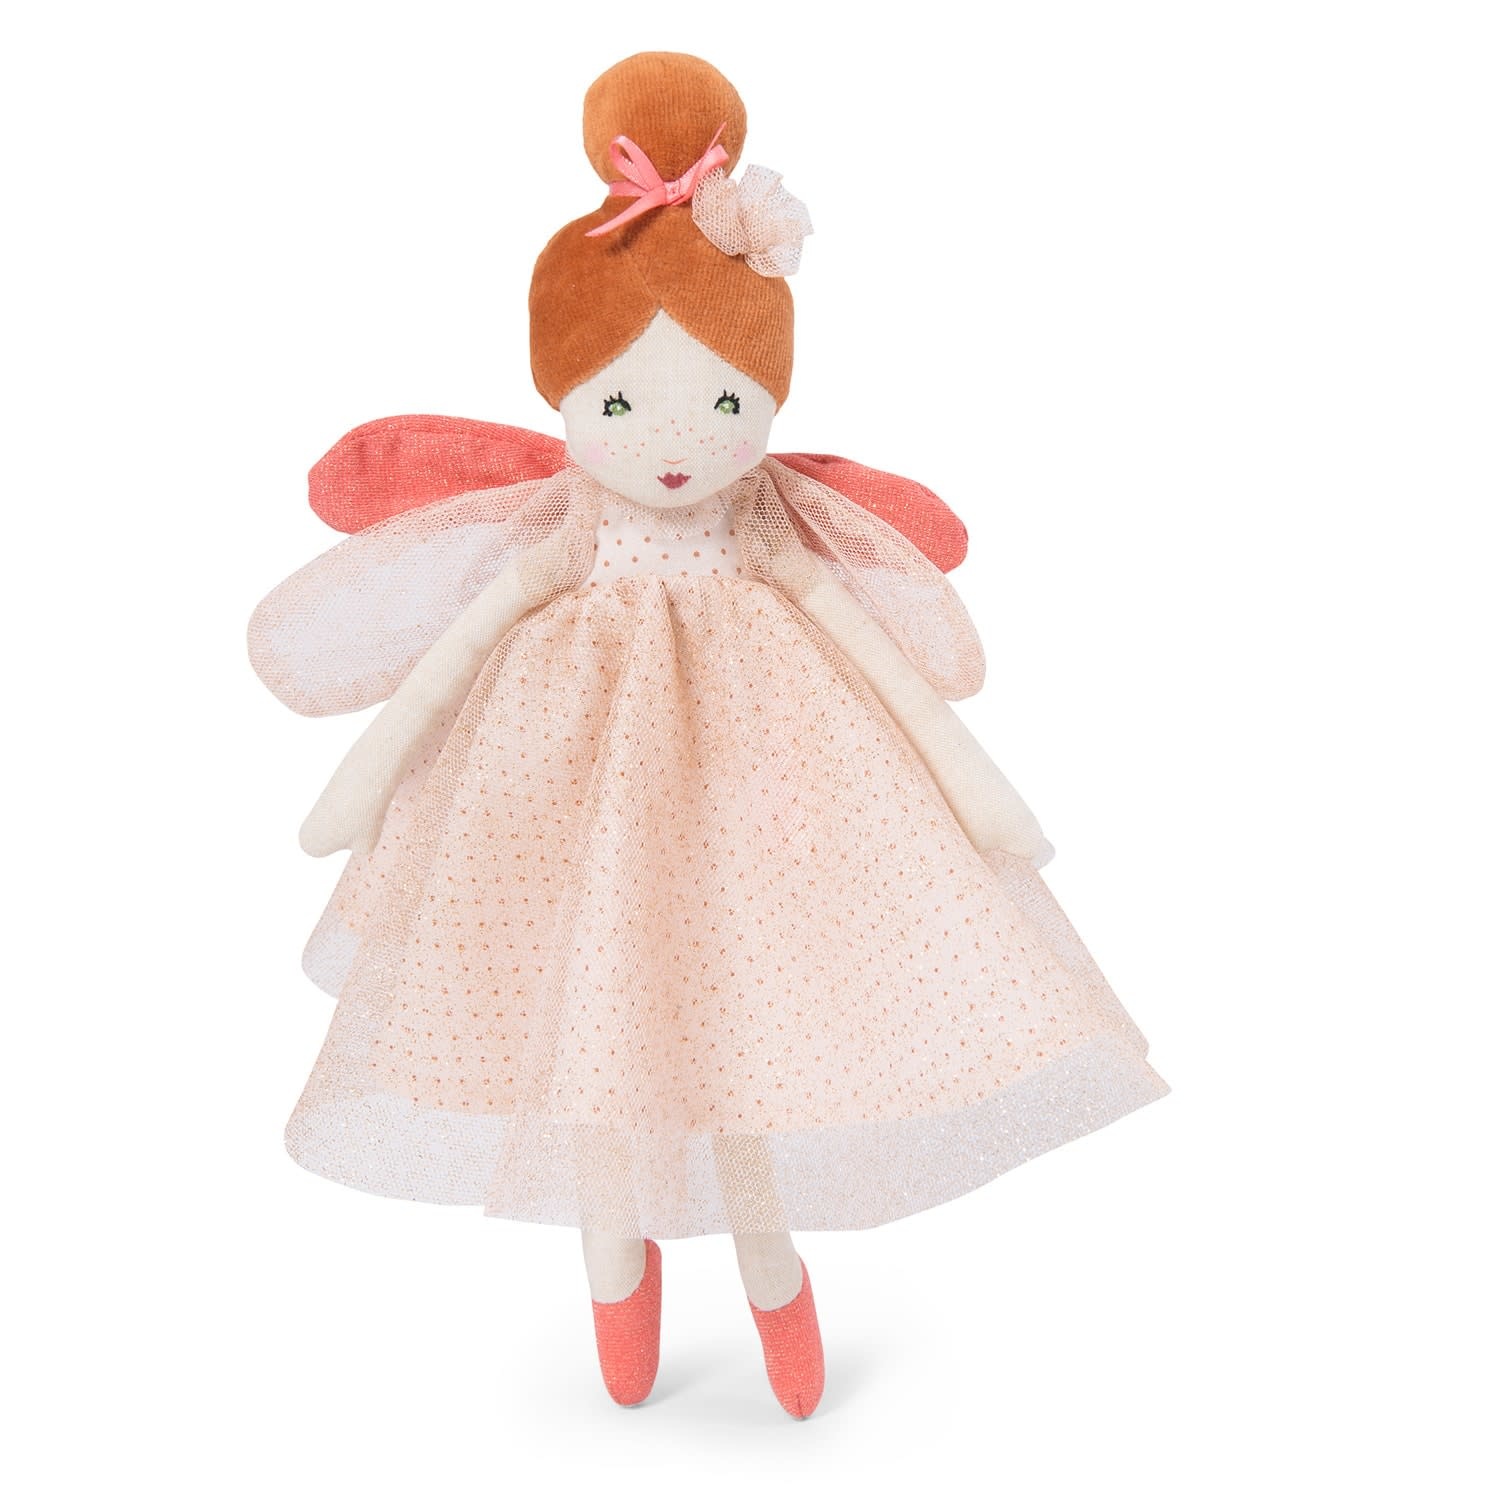 II etait little pink fairy doll